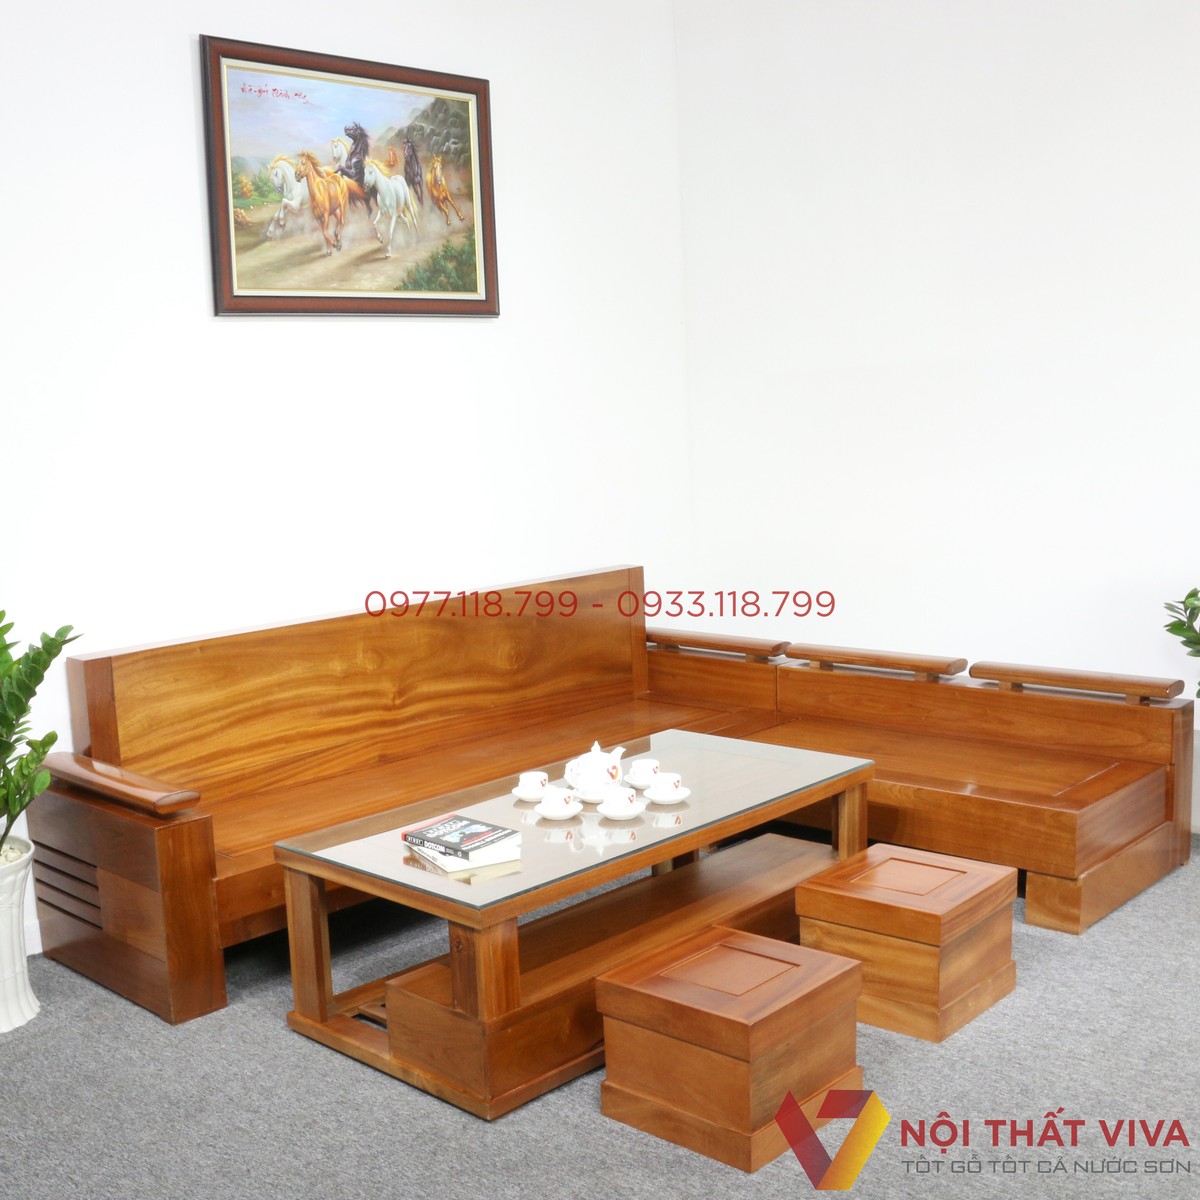 Bộ bàn ghế phòng khách gỗ xoan đào đem đến không gian sang trọng, hài hòa và đầy tinh tế. Với chất liệu gỗ xoan đào cao cấp, bạn sẽ cảm nhận được sự chắc chắn và bền bỉ của sản phẩm. Hãy xem hình ảnh để cảm nhận vẻ đẹp độc đáo của nó.